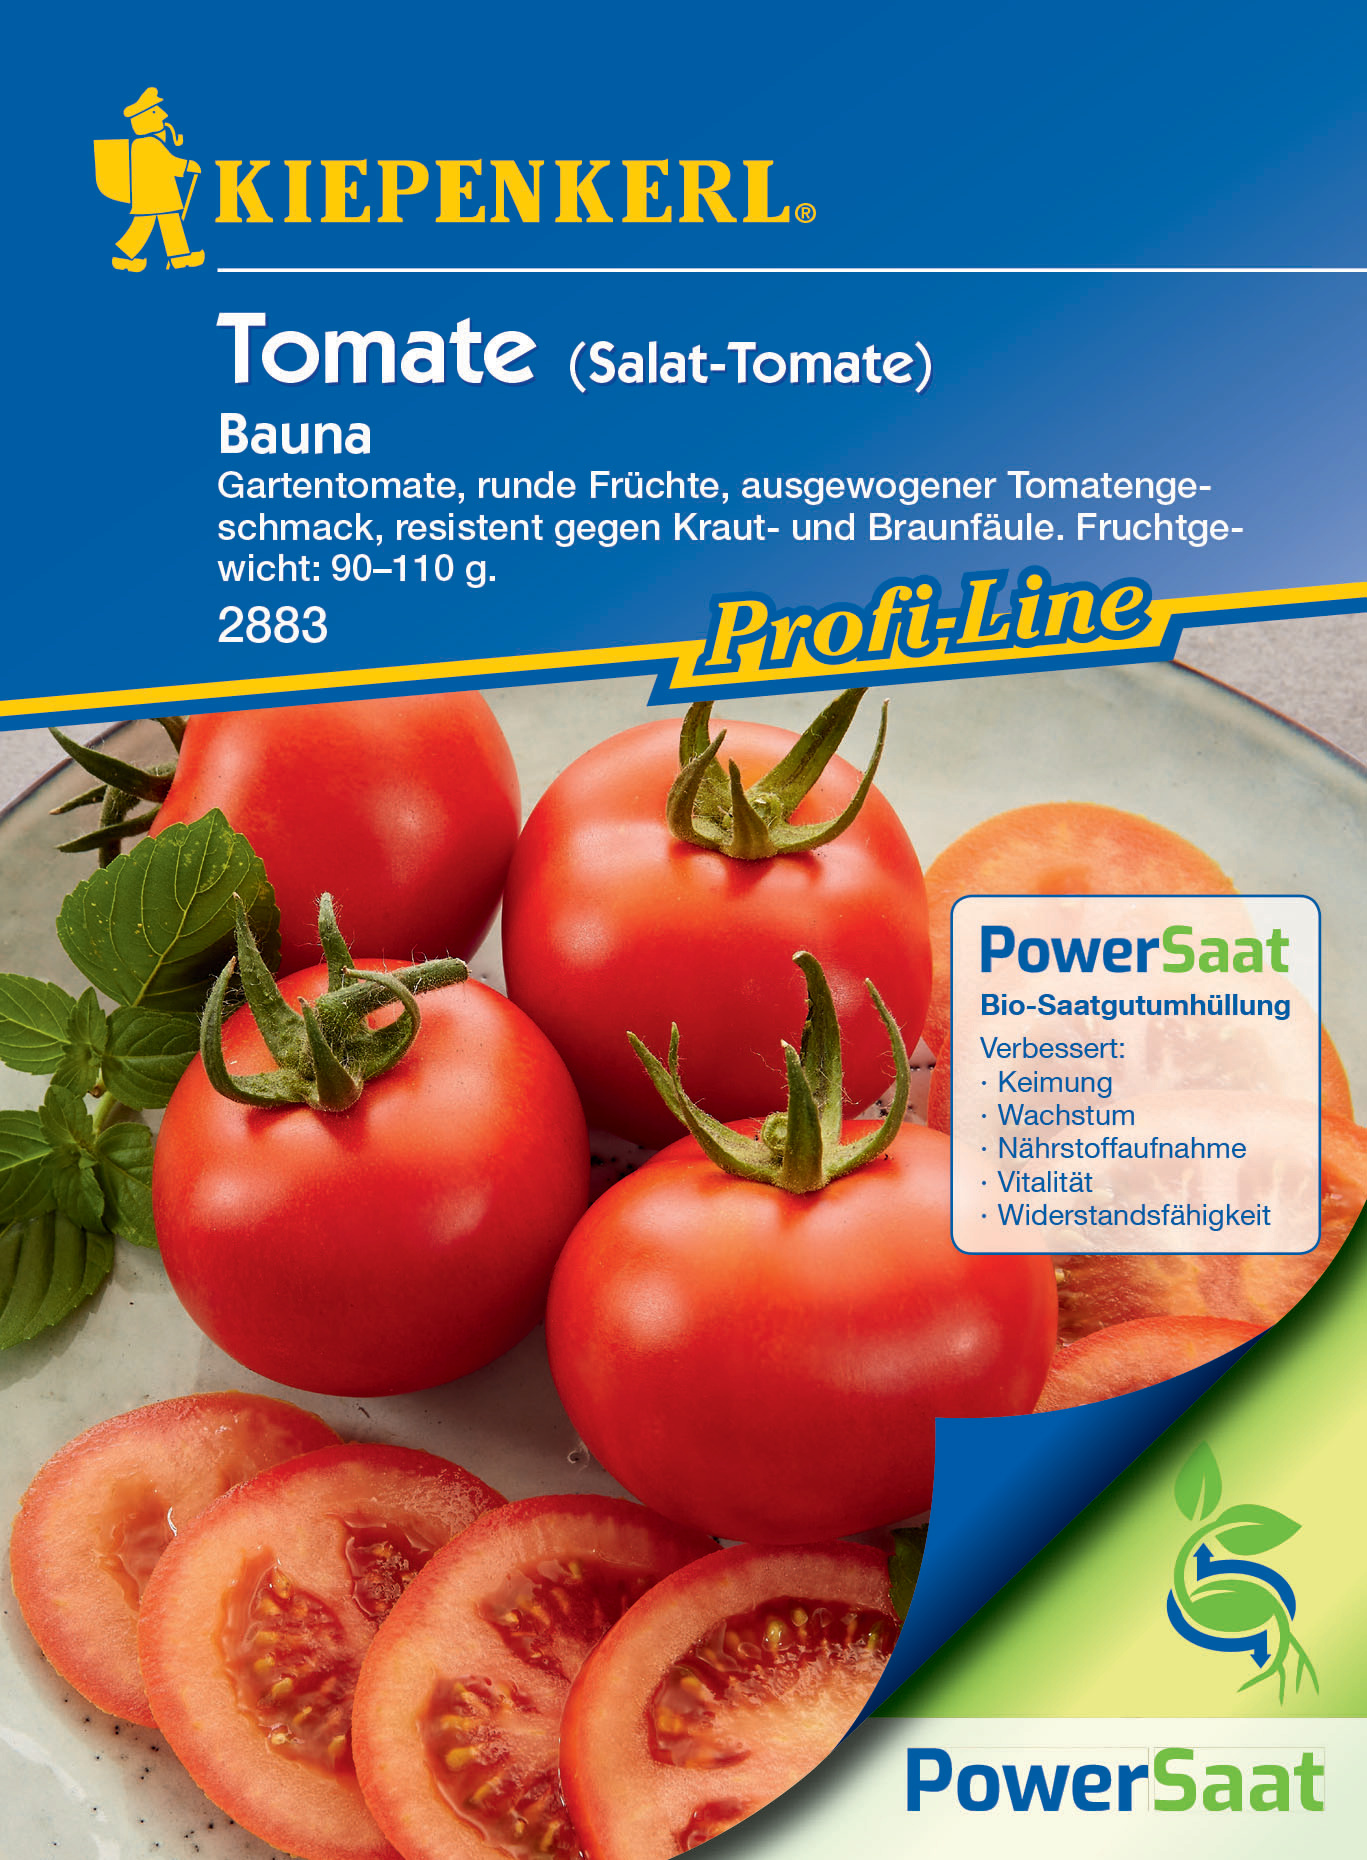 Salat-Tomate Bauna, F1 PowerSaat